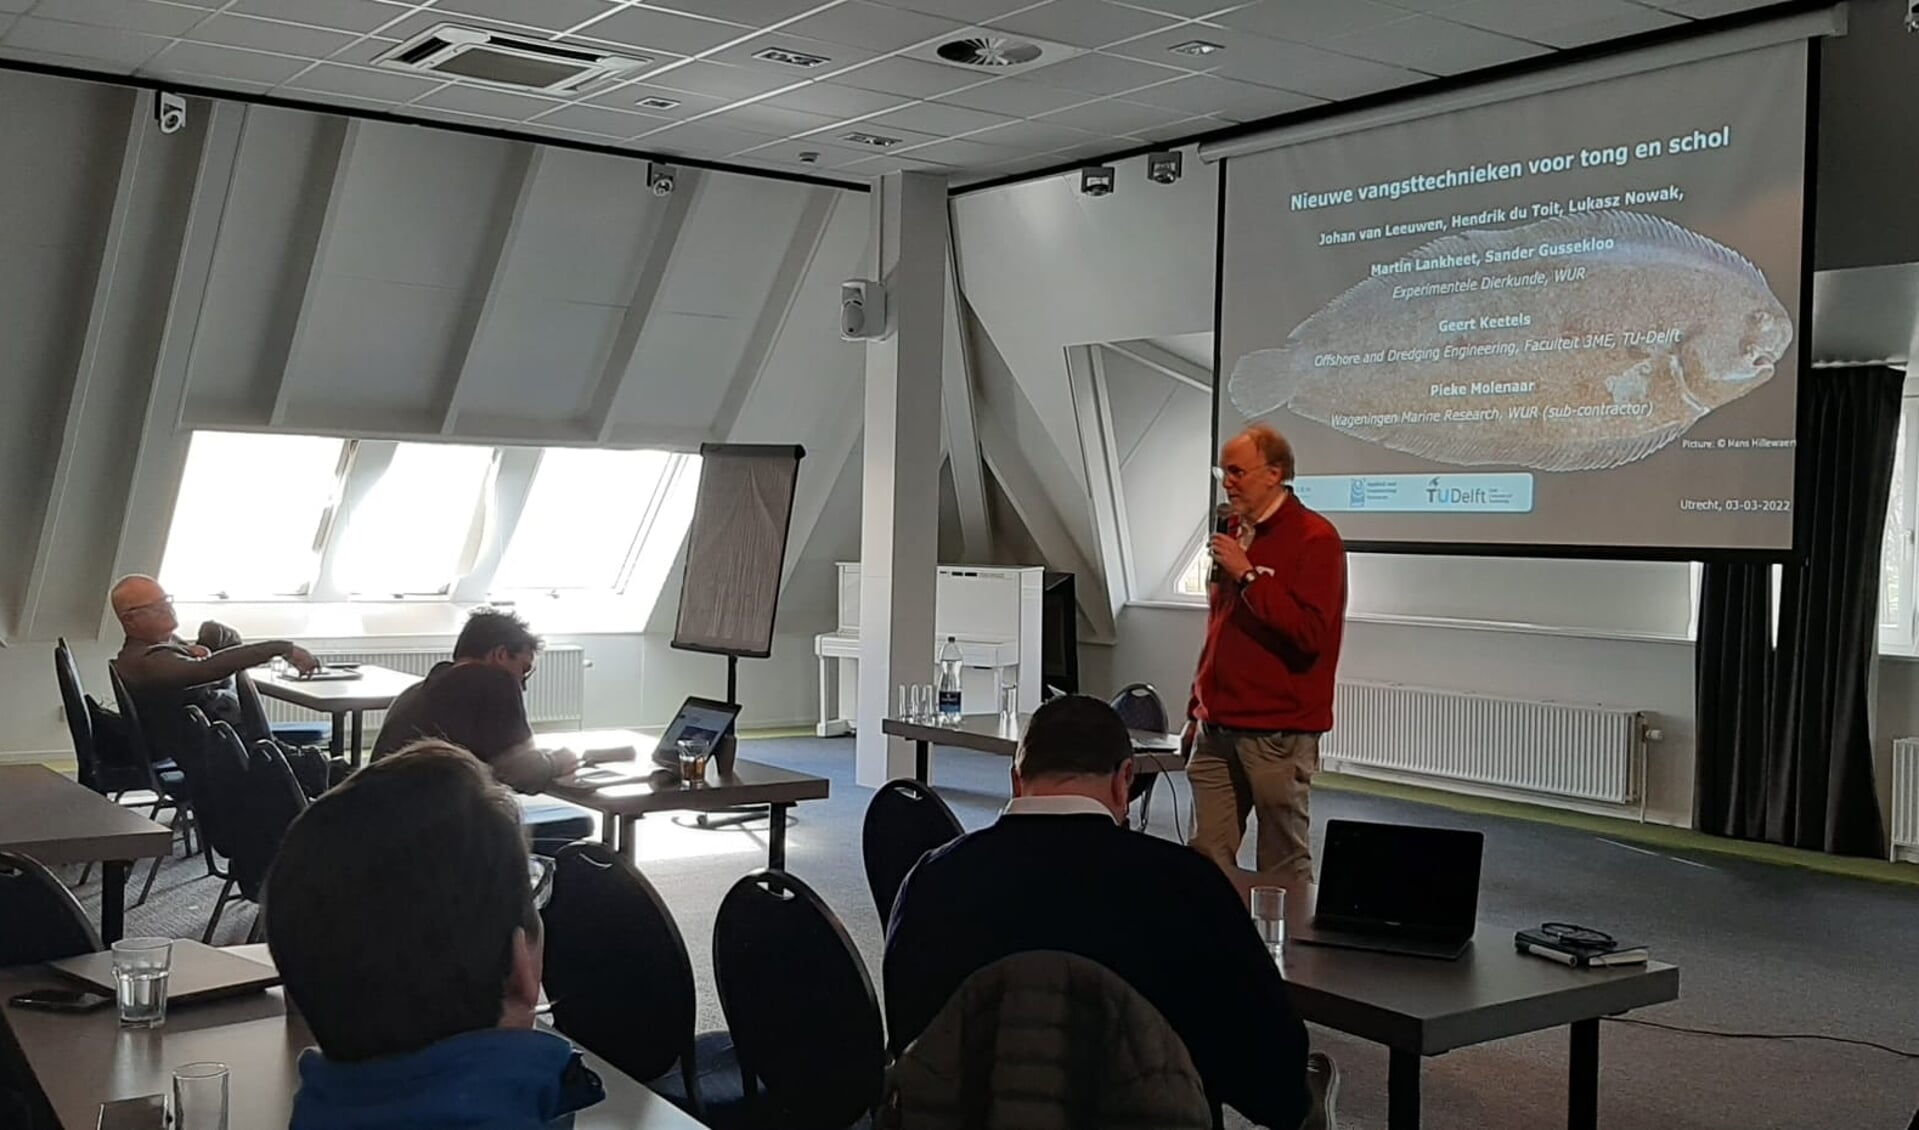 H Johan van Leeuwen van Wageningen Universiteit over onderzoek naar het detecteren van vis in de bodem en hoe die uitkomsten gebruikt kunnen worden voor nieuwe visserijtechnieken voor tong.